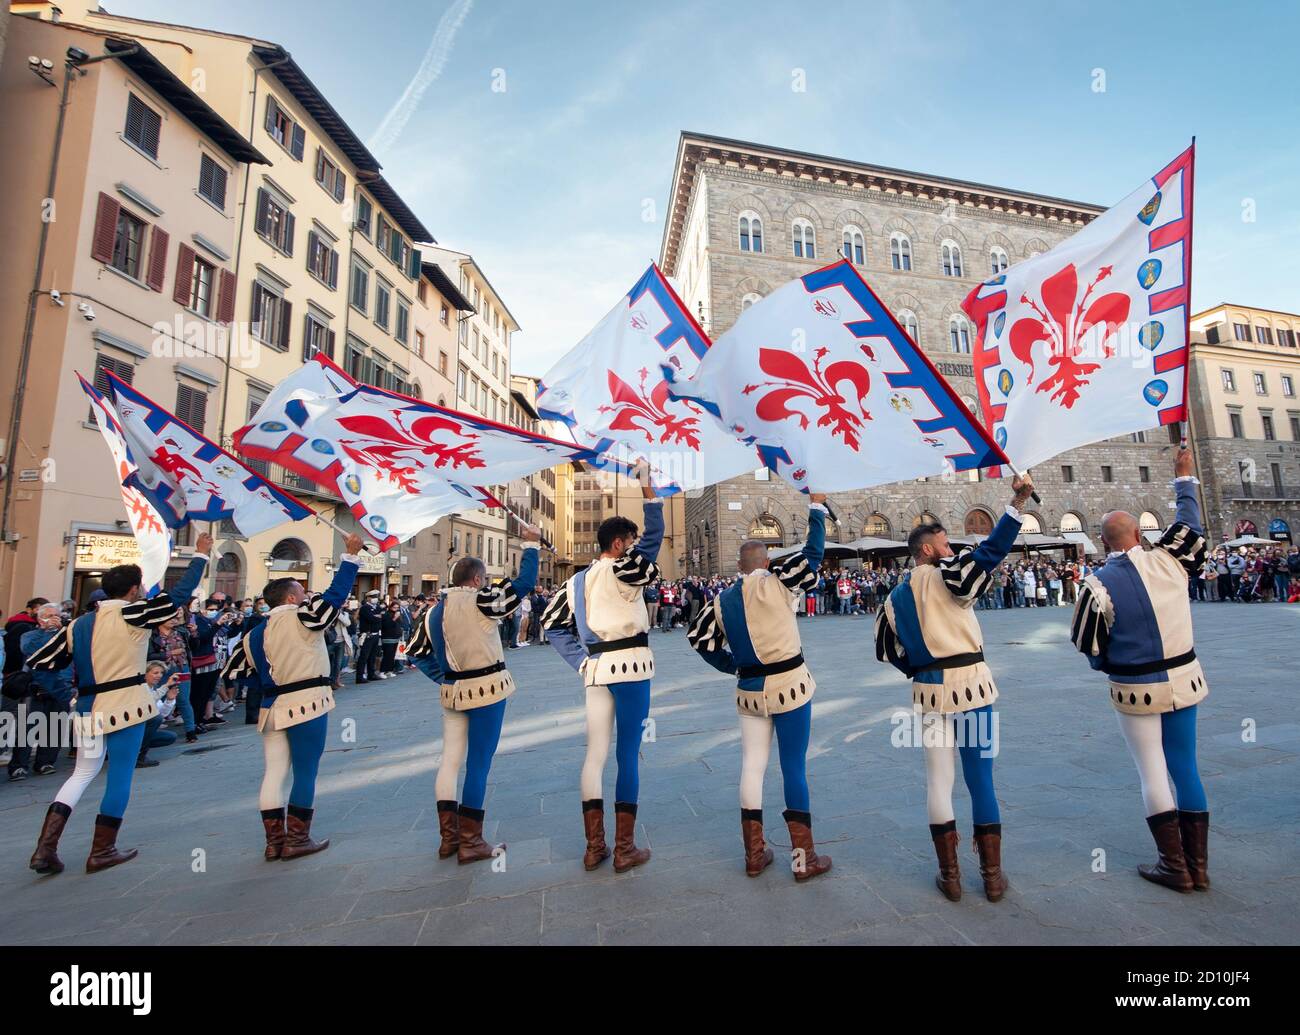 Florenz, Italien - 2020. September 26: Aufführung des Fahnenschwenkens auf der Piazza della Signoria während einer historischen Nachstellung. Stockfoto